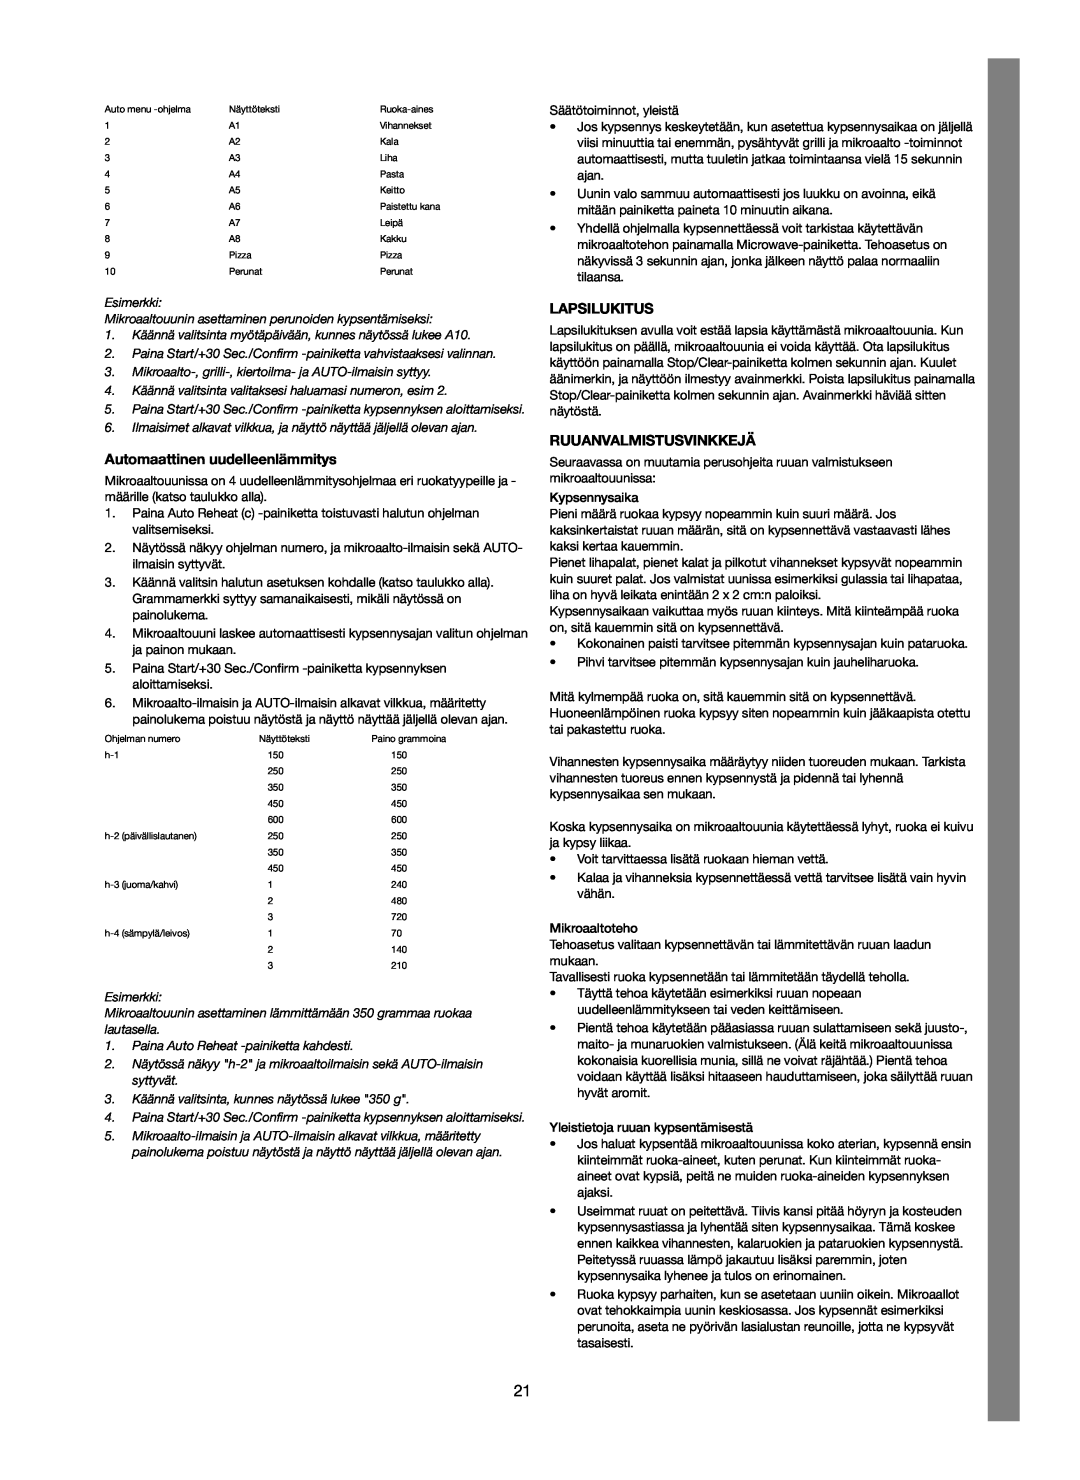 Melissa 253-012 manual Automaattinen uudelleenlämmitys, Lapsilukitus, Ruuanvalmistusvinkkejä 